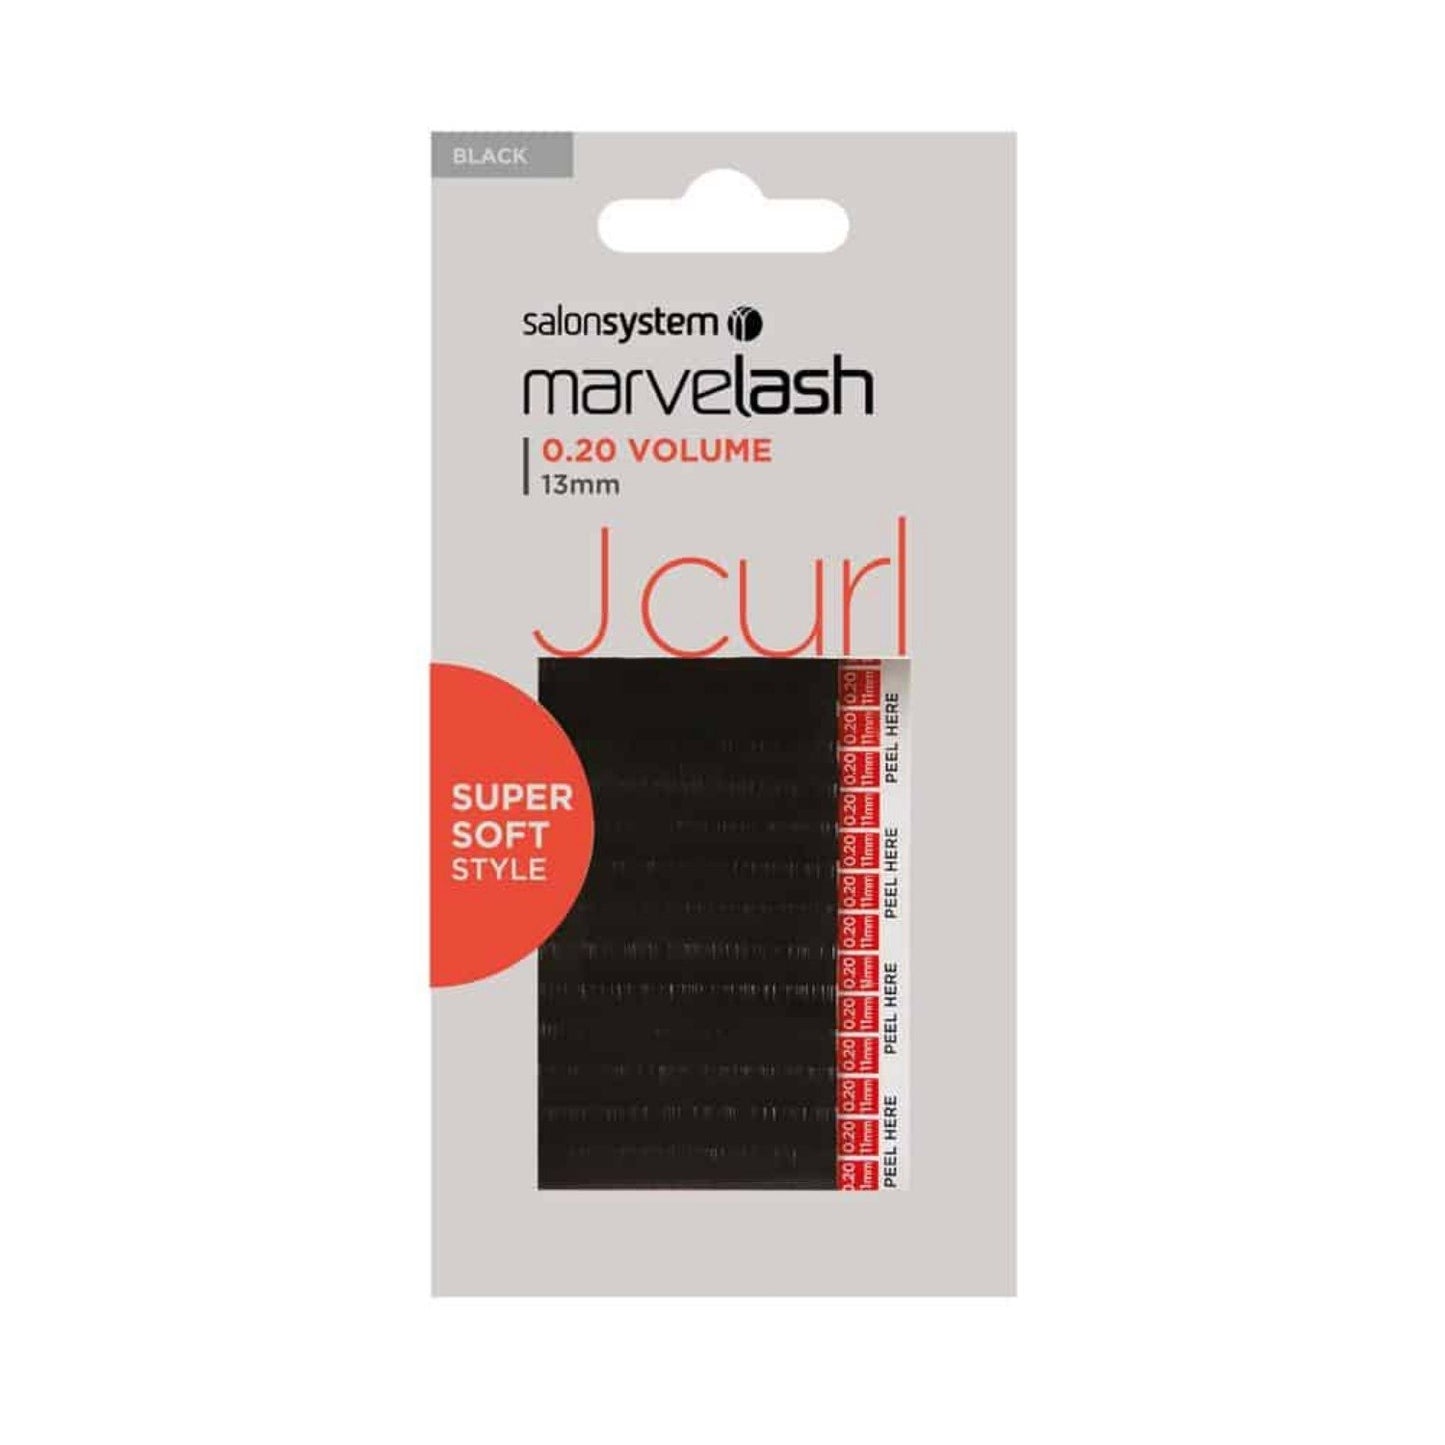 Salon System Marvelash J Curl 0.20 Volume, 13mm Super Soft Lash (SHOP)